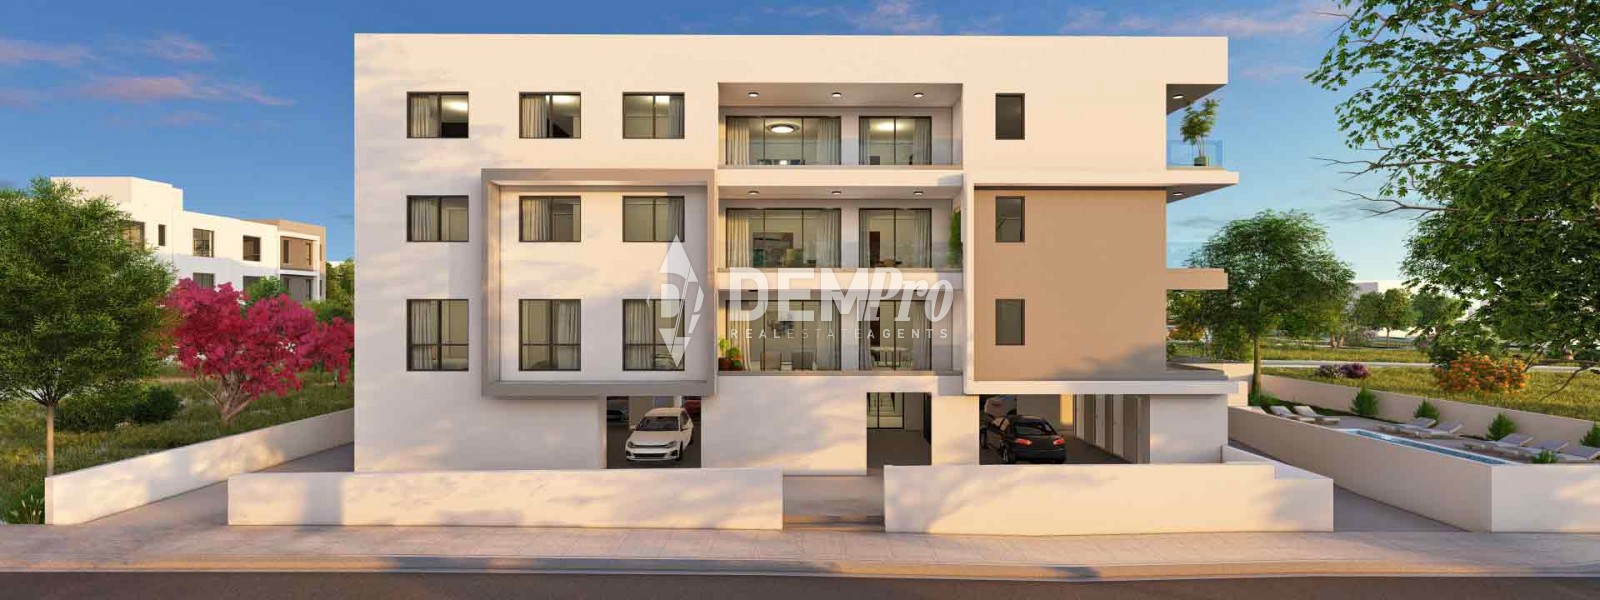 Apartment For Sale in Paphos City Center, Paphos - DP4041